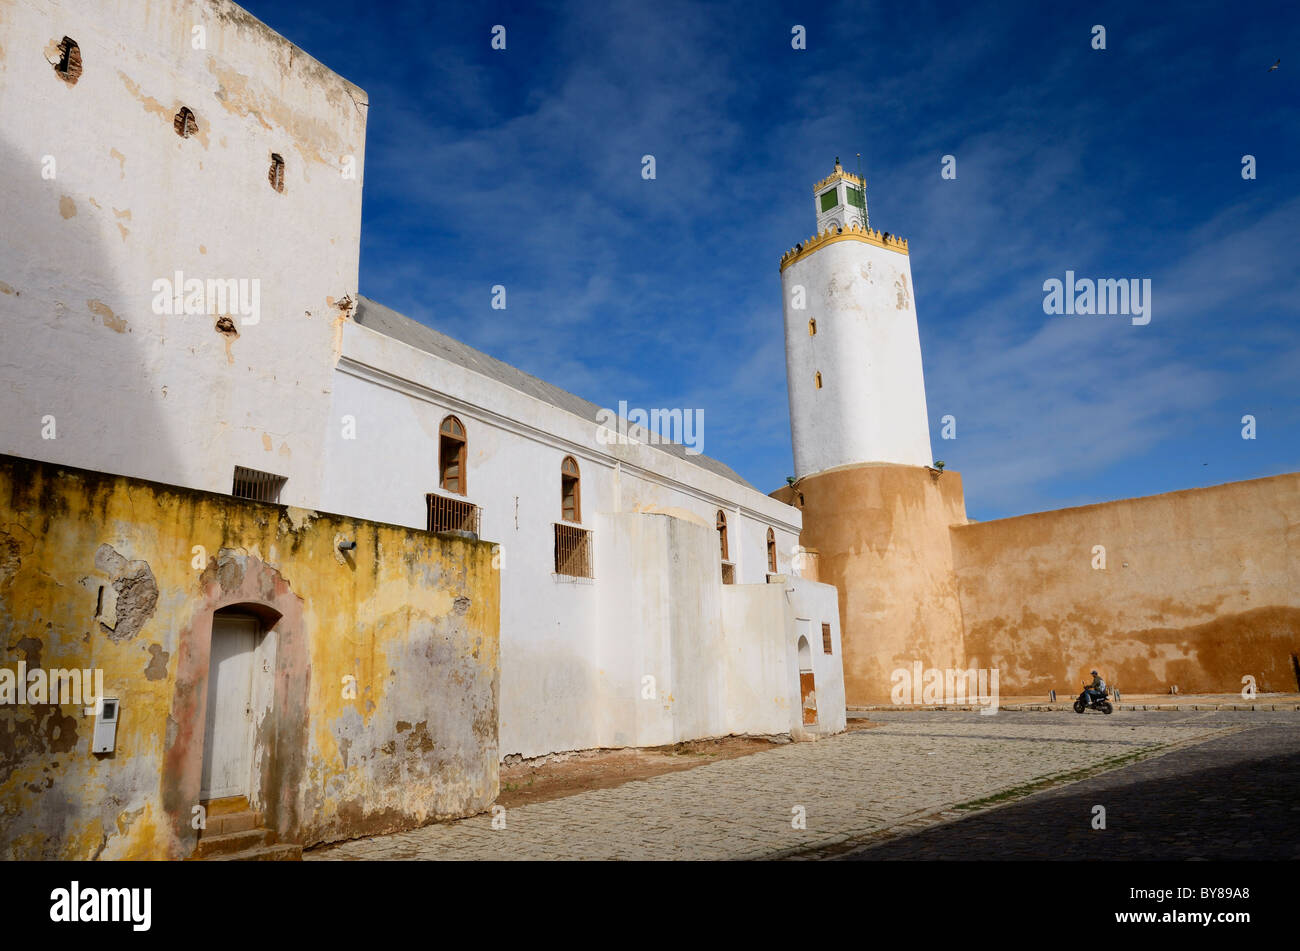 Motociclista nel cortile della grande moschea vecchia città portoghese di El Jadida Marocco Foto Stock